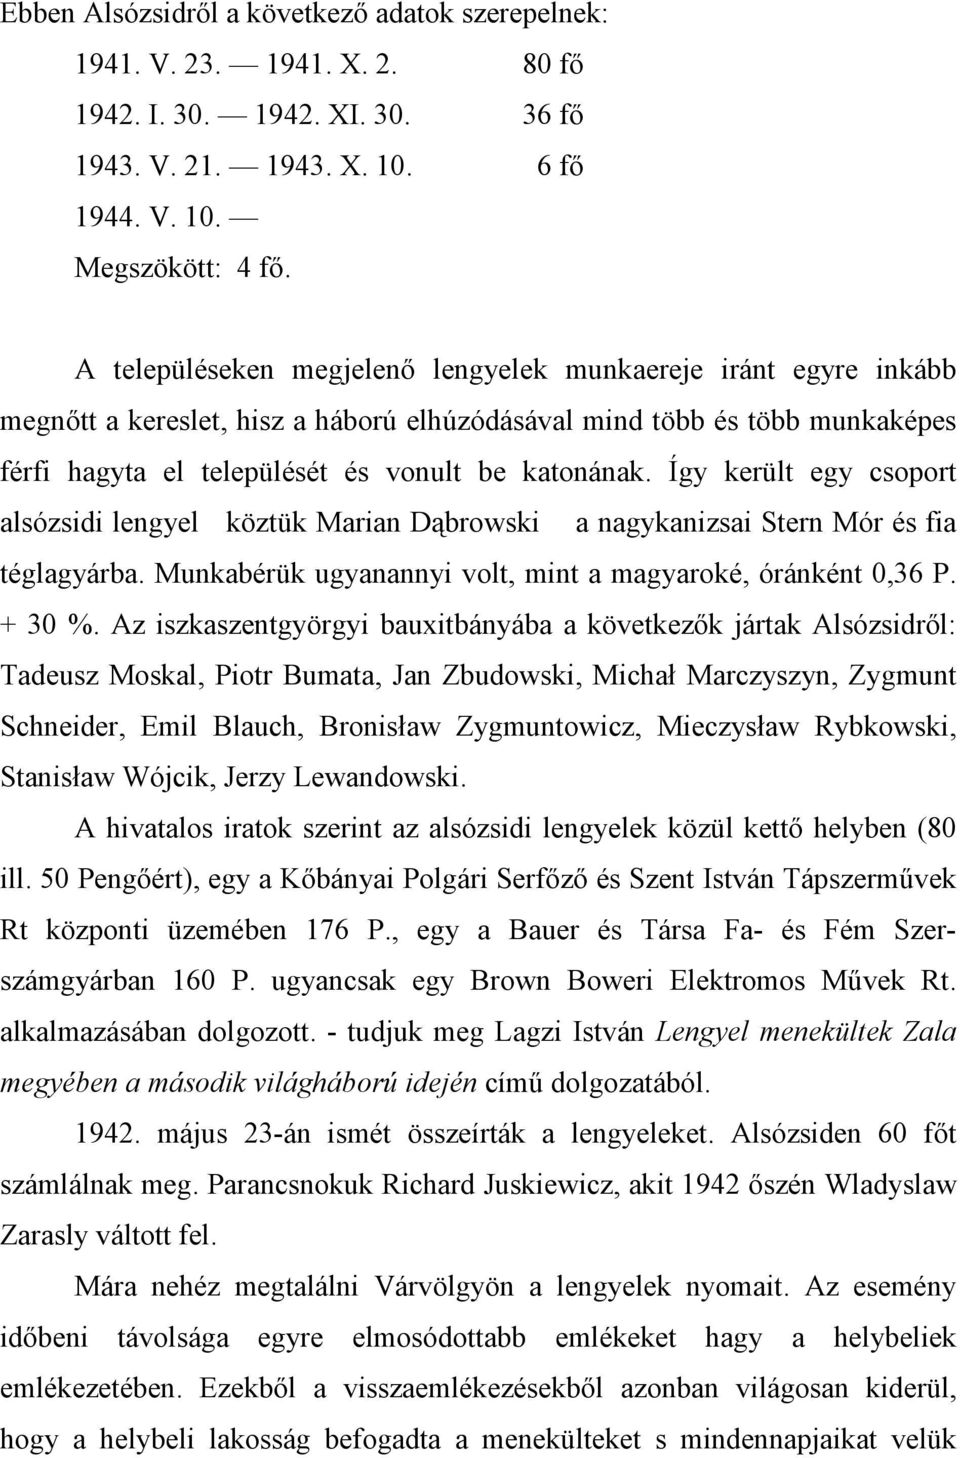 Így került egy csoport alsózsidi lengyel köztük Marian Dąbrowski a nagykanizsai Stern Mór és fia téglagyárba. Munkabérük ugyanannyi volt, mint a magyaroké, óránként 0,36 P. + 30 %.